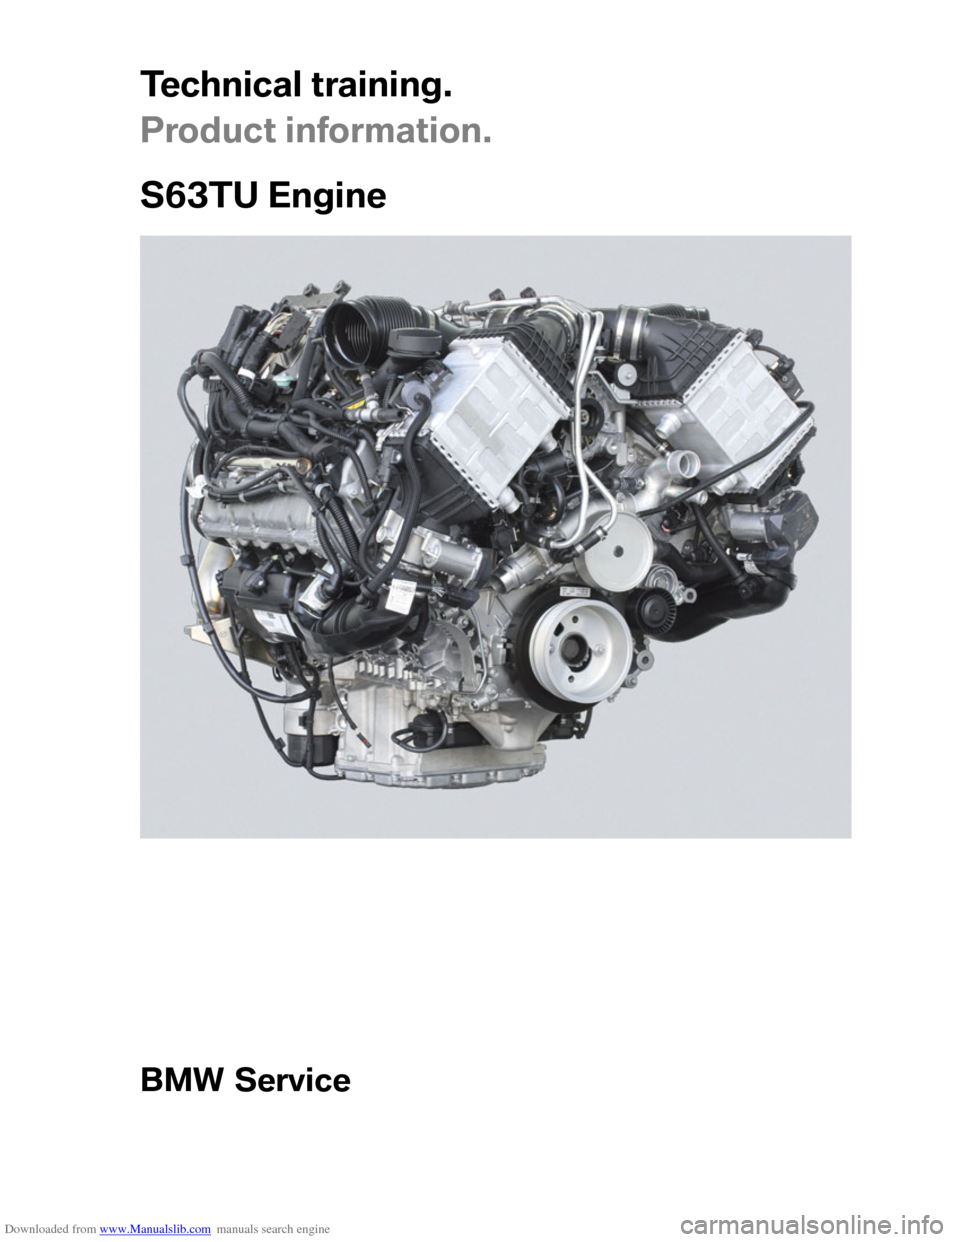 BMW M6 2012 F12 S63TU Engine Technical Training Manual 